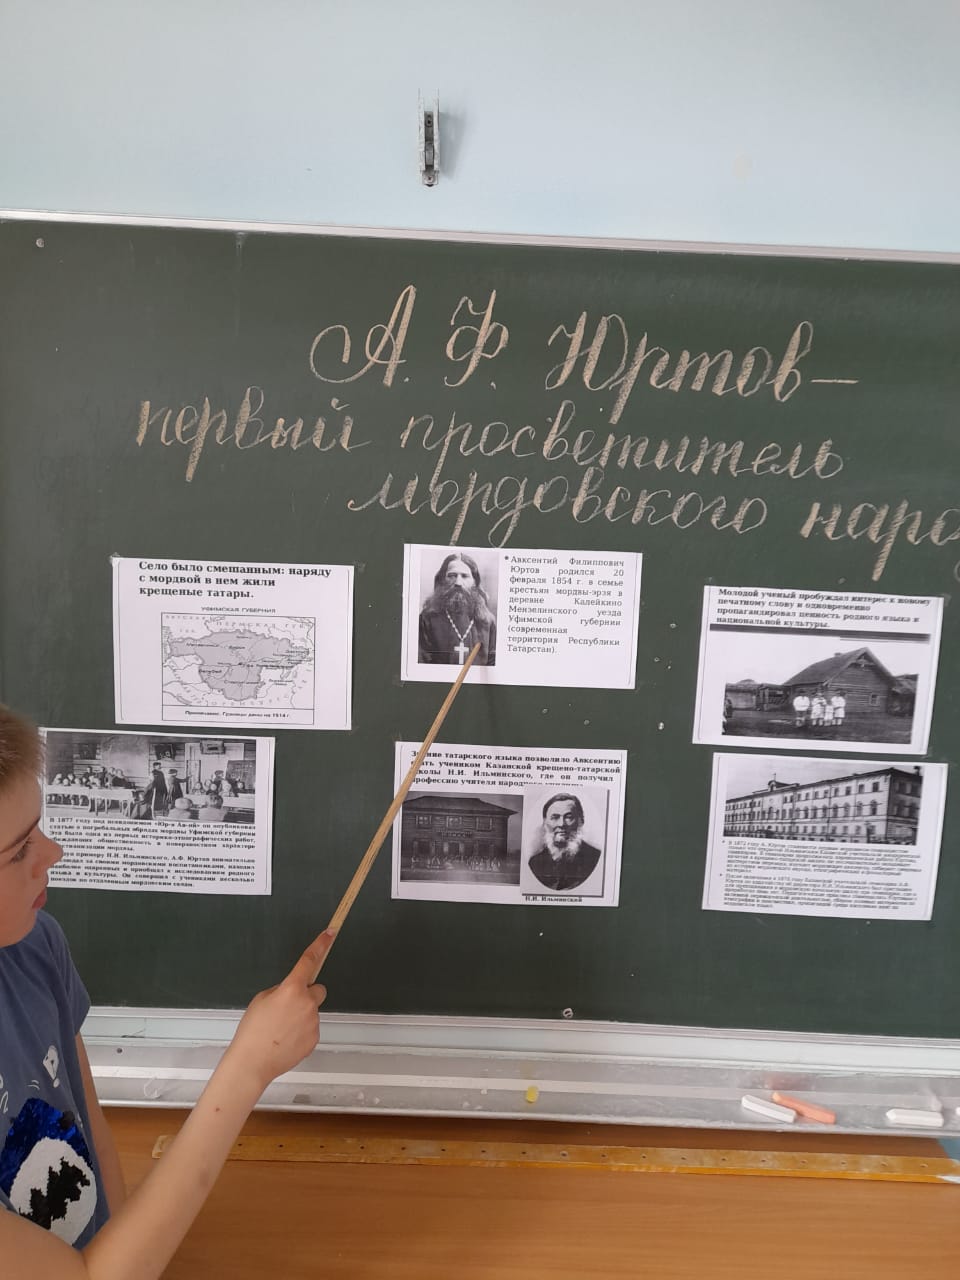 Учащиеся знакомятся с биографией А.Ф. Юртова.